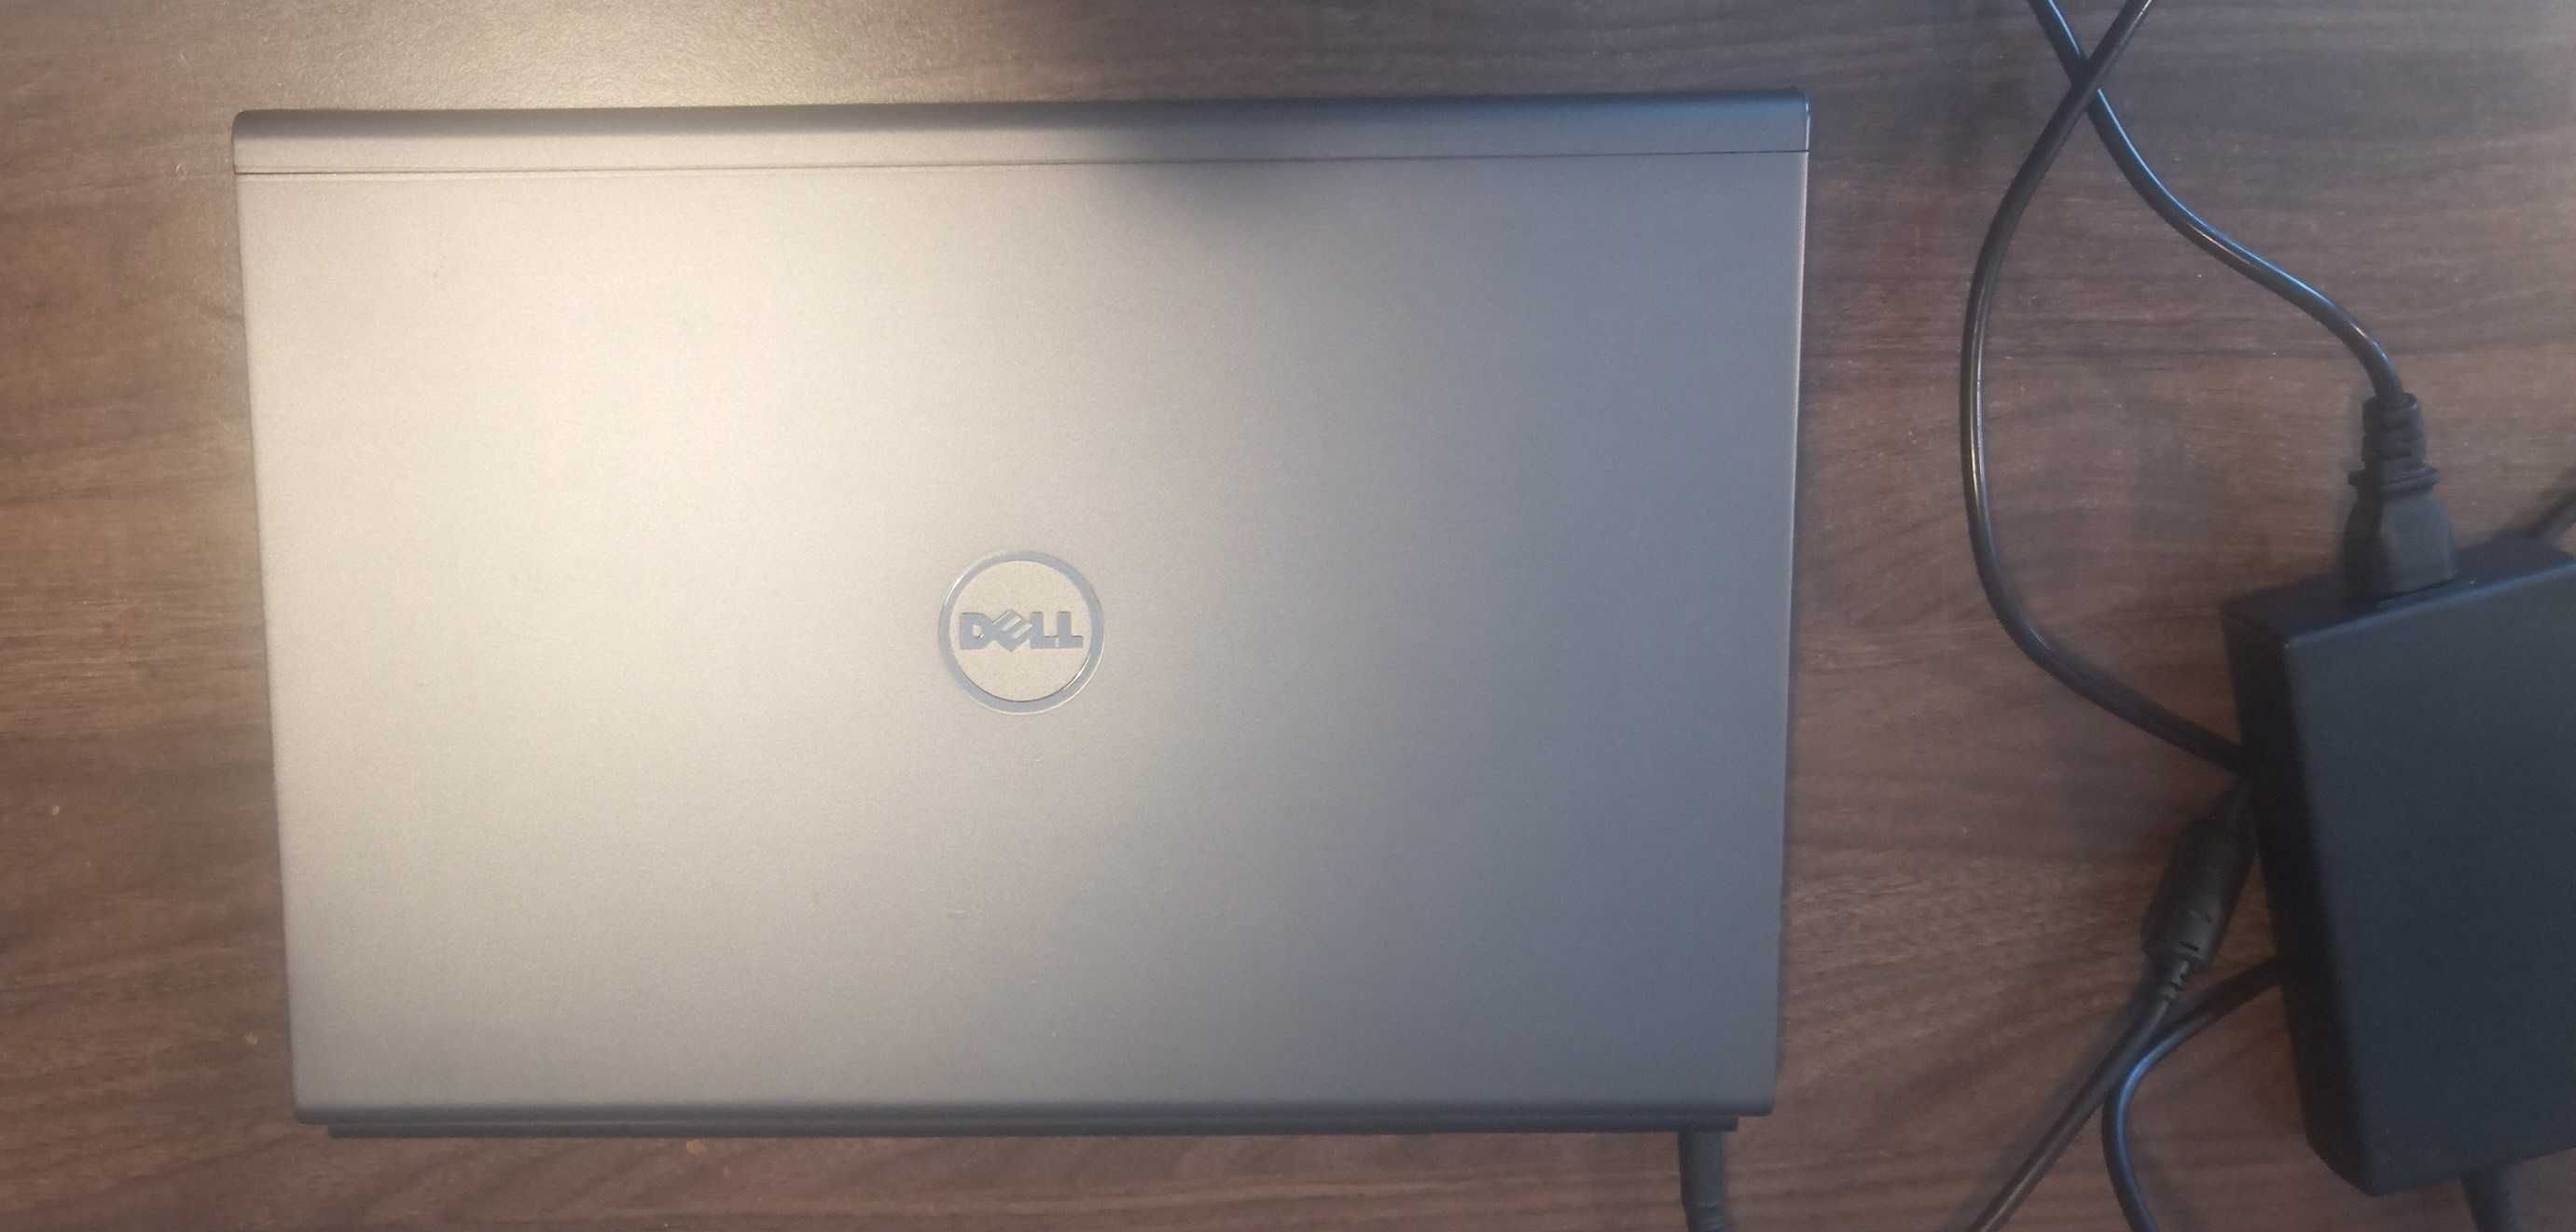 Laptop Dell m4600. I7 32gb ram 500gb SSD